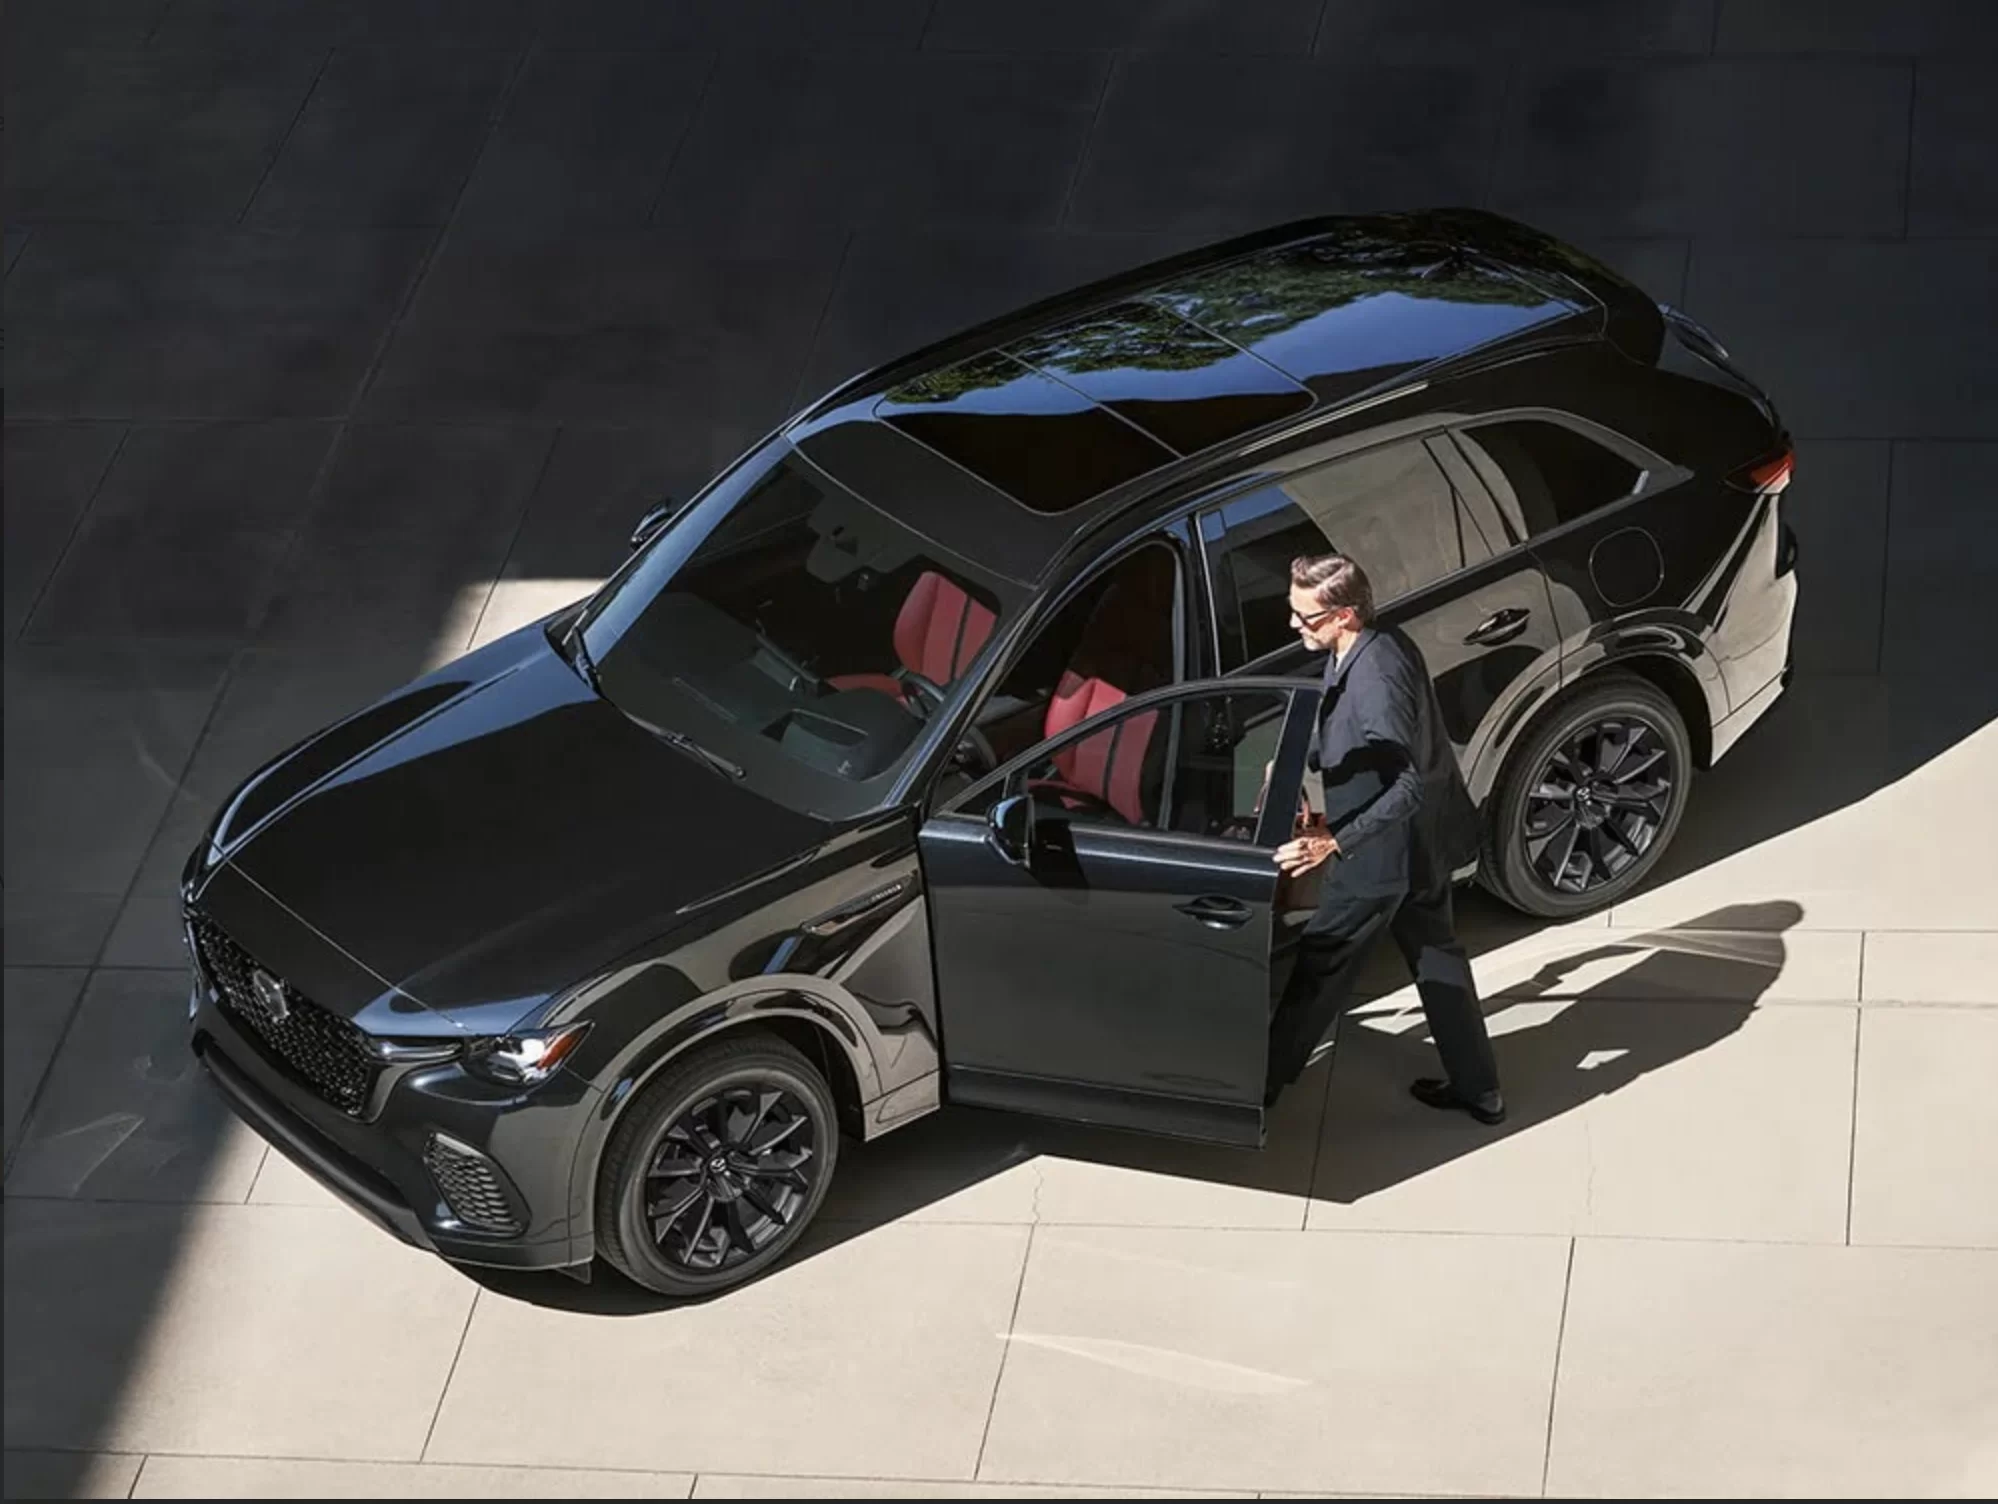 Le Mazda CX-70 2025 : L’alliance parfaite entre performance et élégance